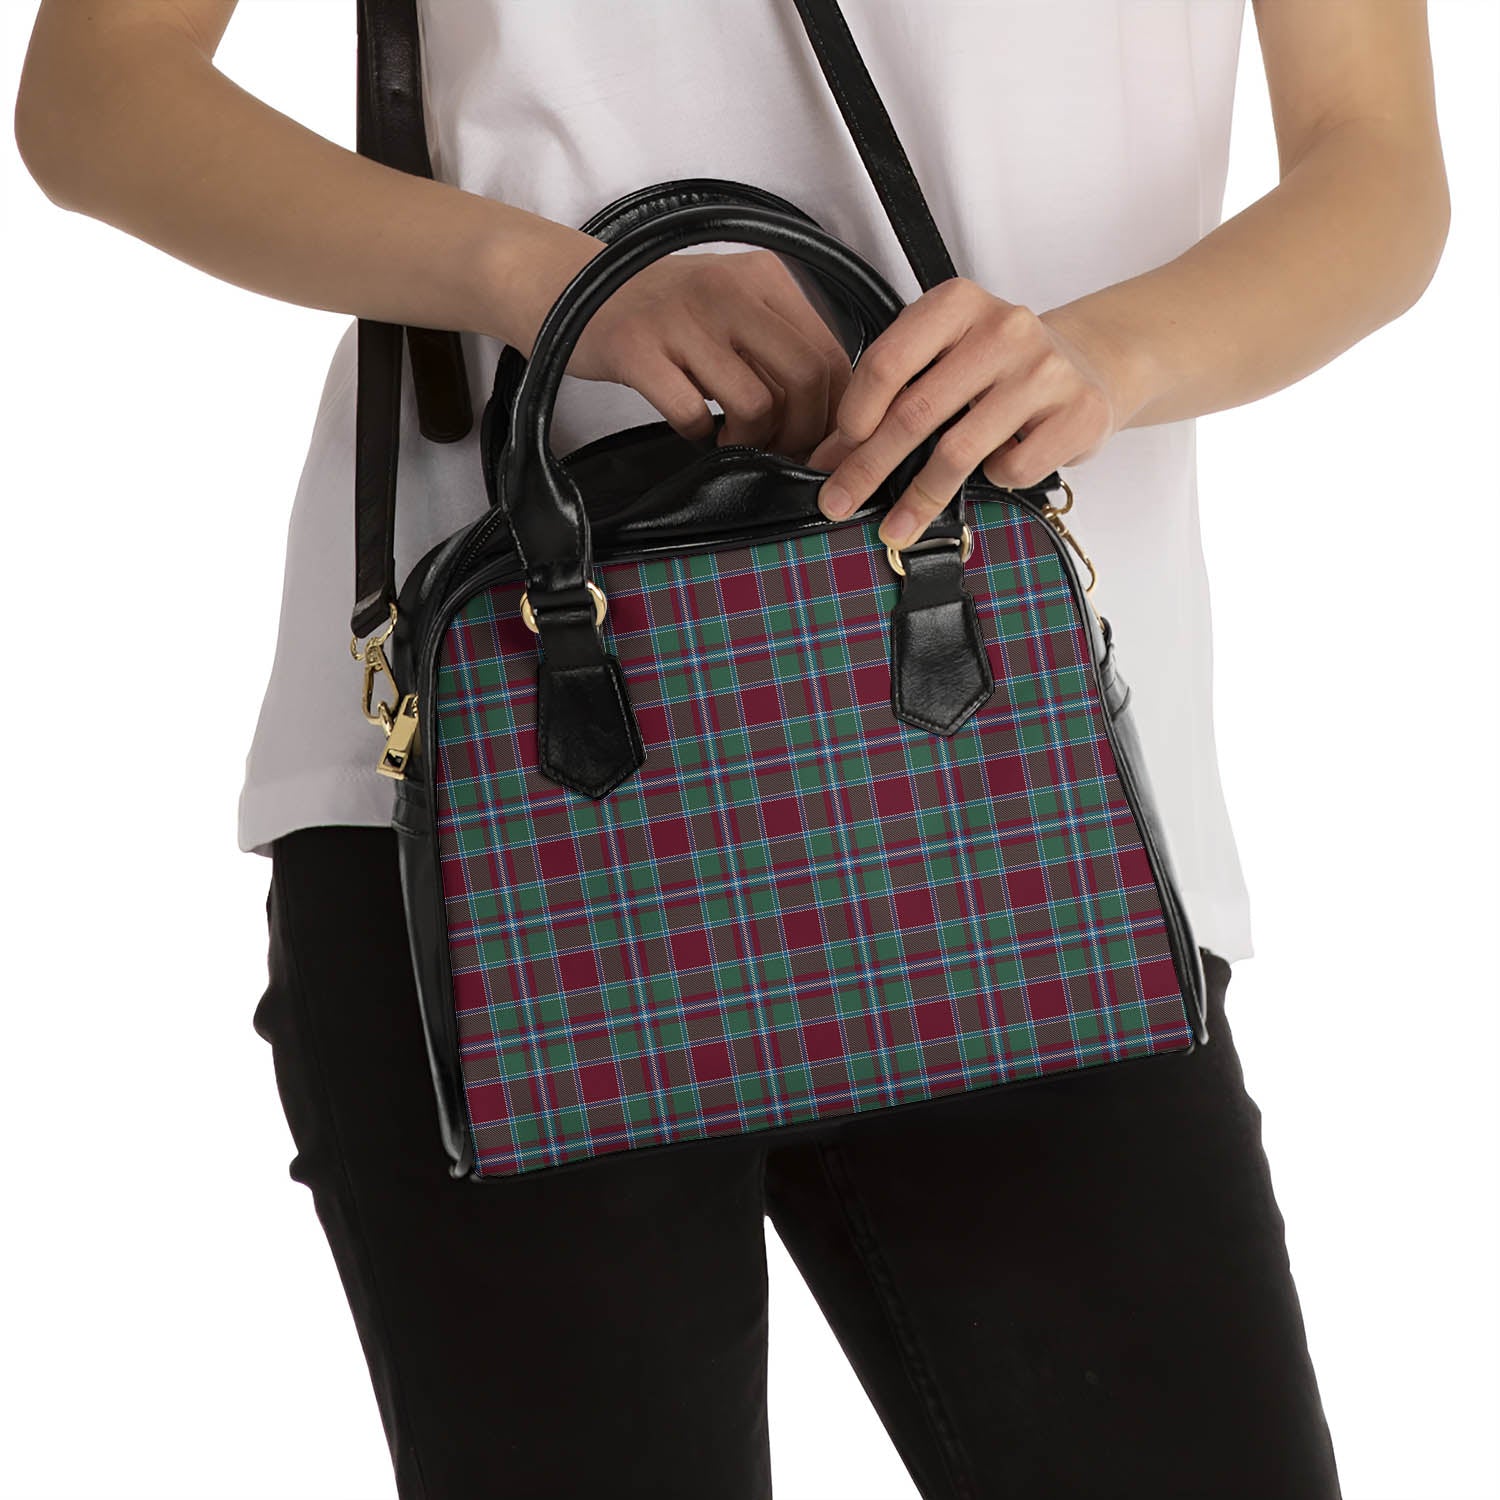 Spens (Spence) Tartan Shoulder Handbags - Tartanvibesclothing